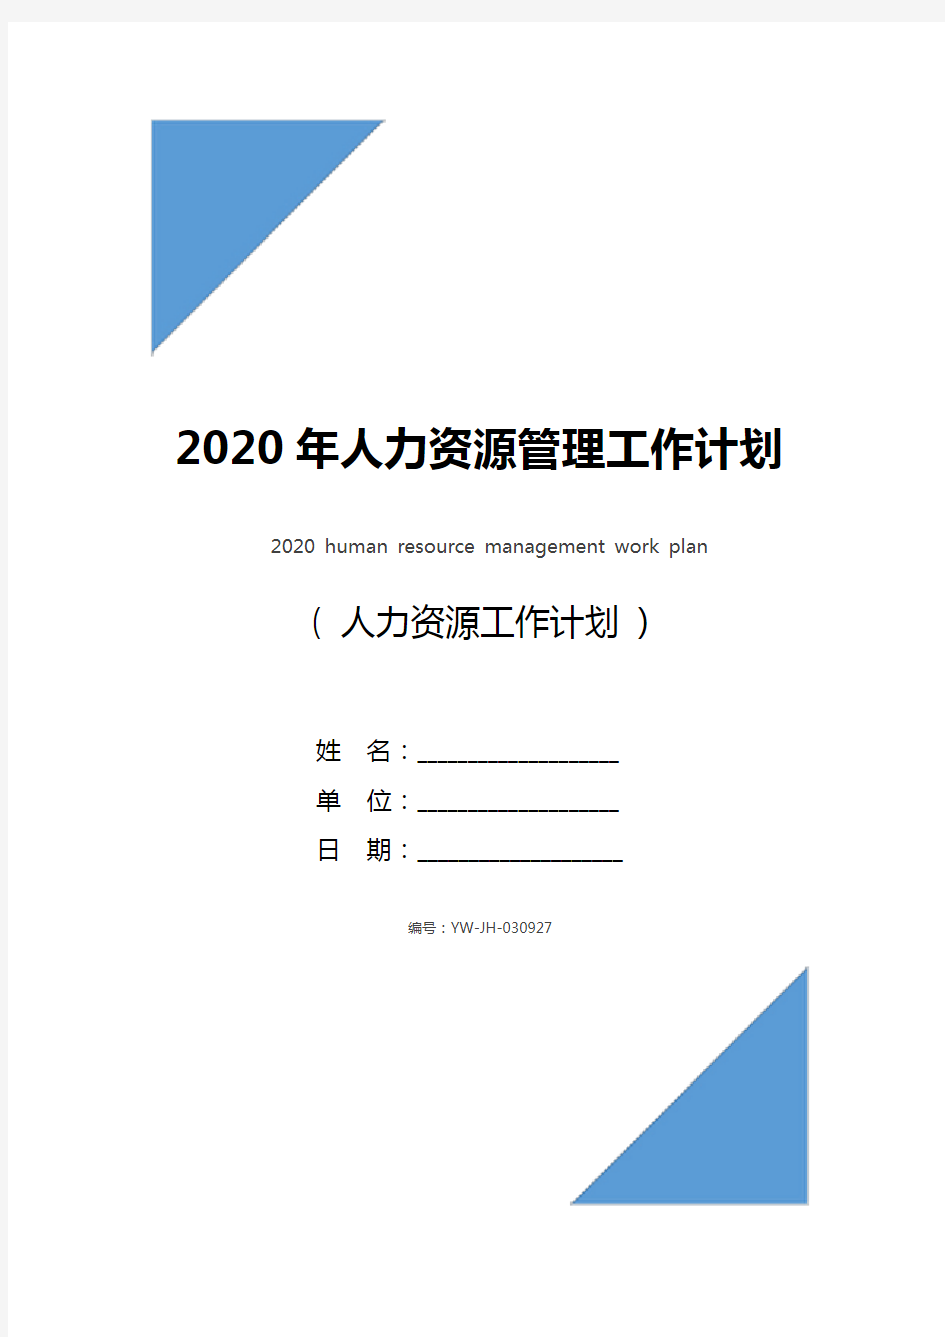 2020年人力资源管理工作计划